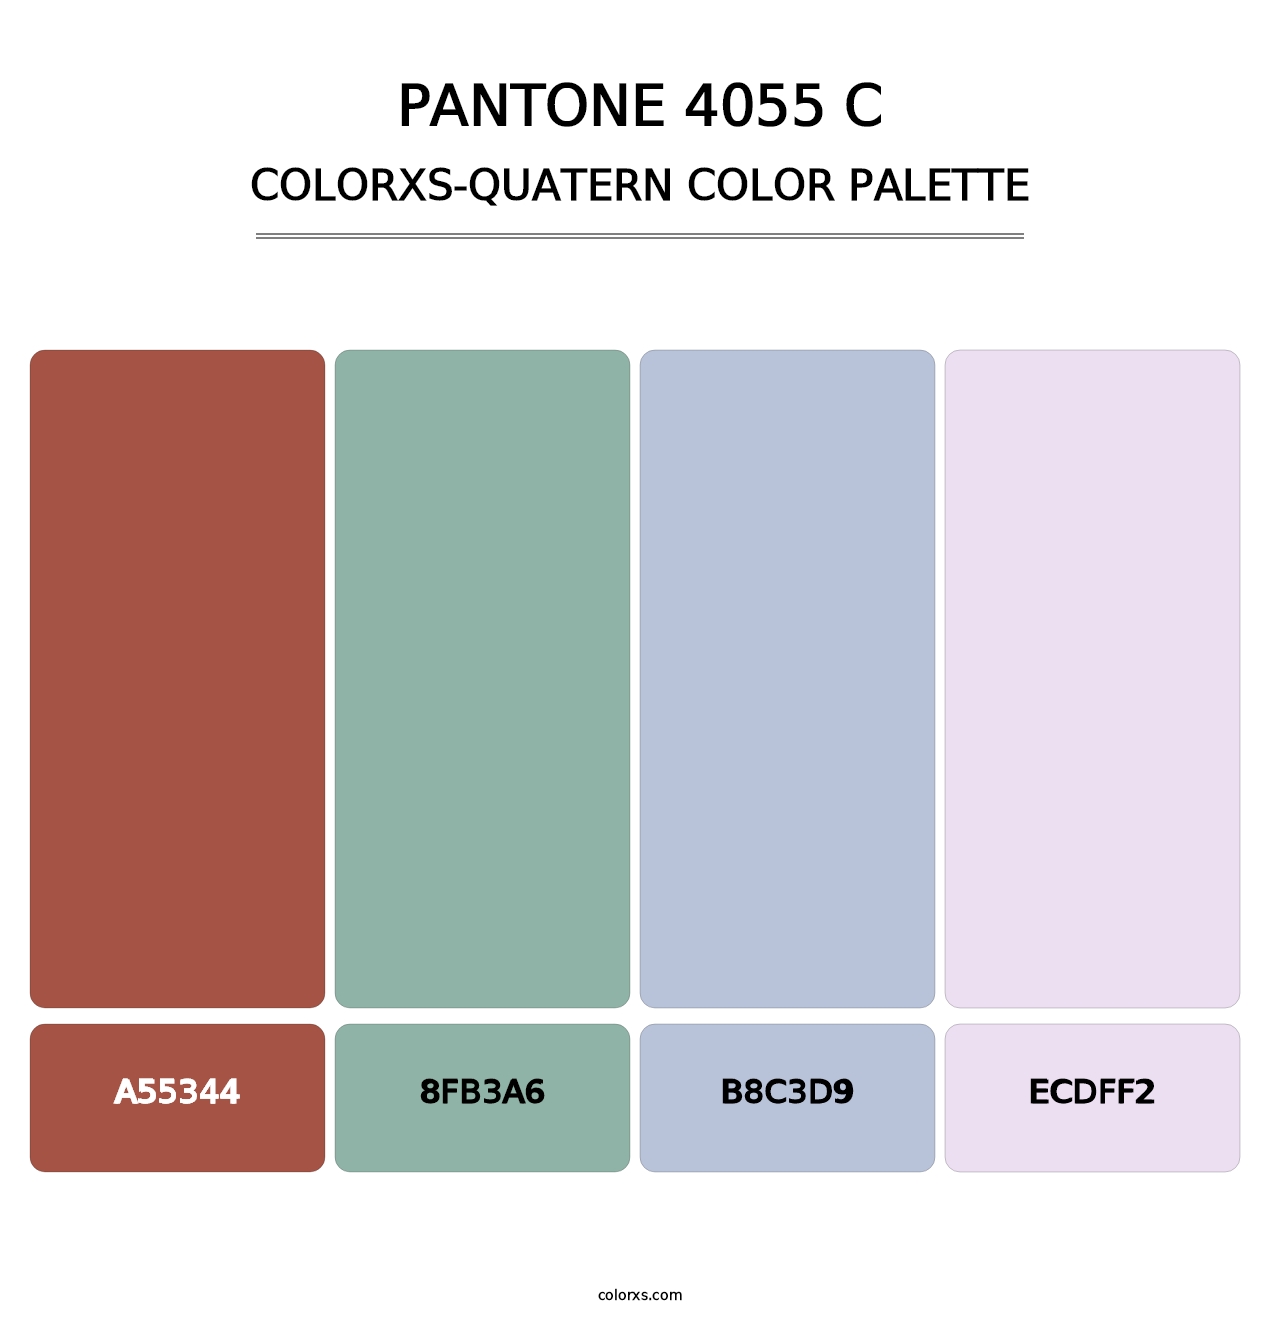 PANTONE 4055 C - Colorxs Quatern Palette